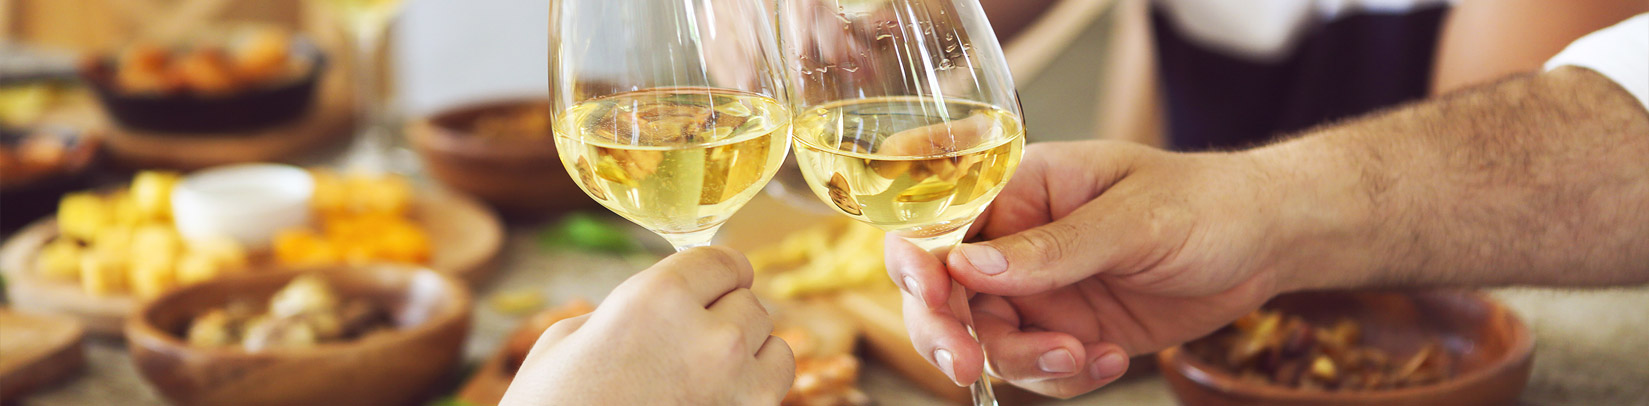 Weisswein online kaufen erlesene - Sorten aller Welt aus